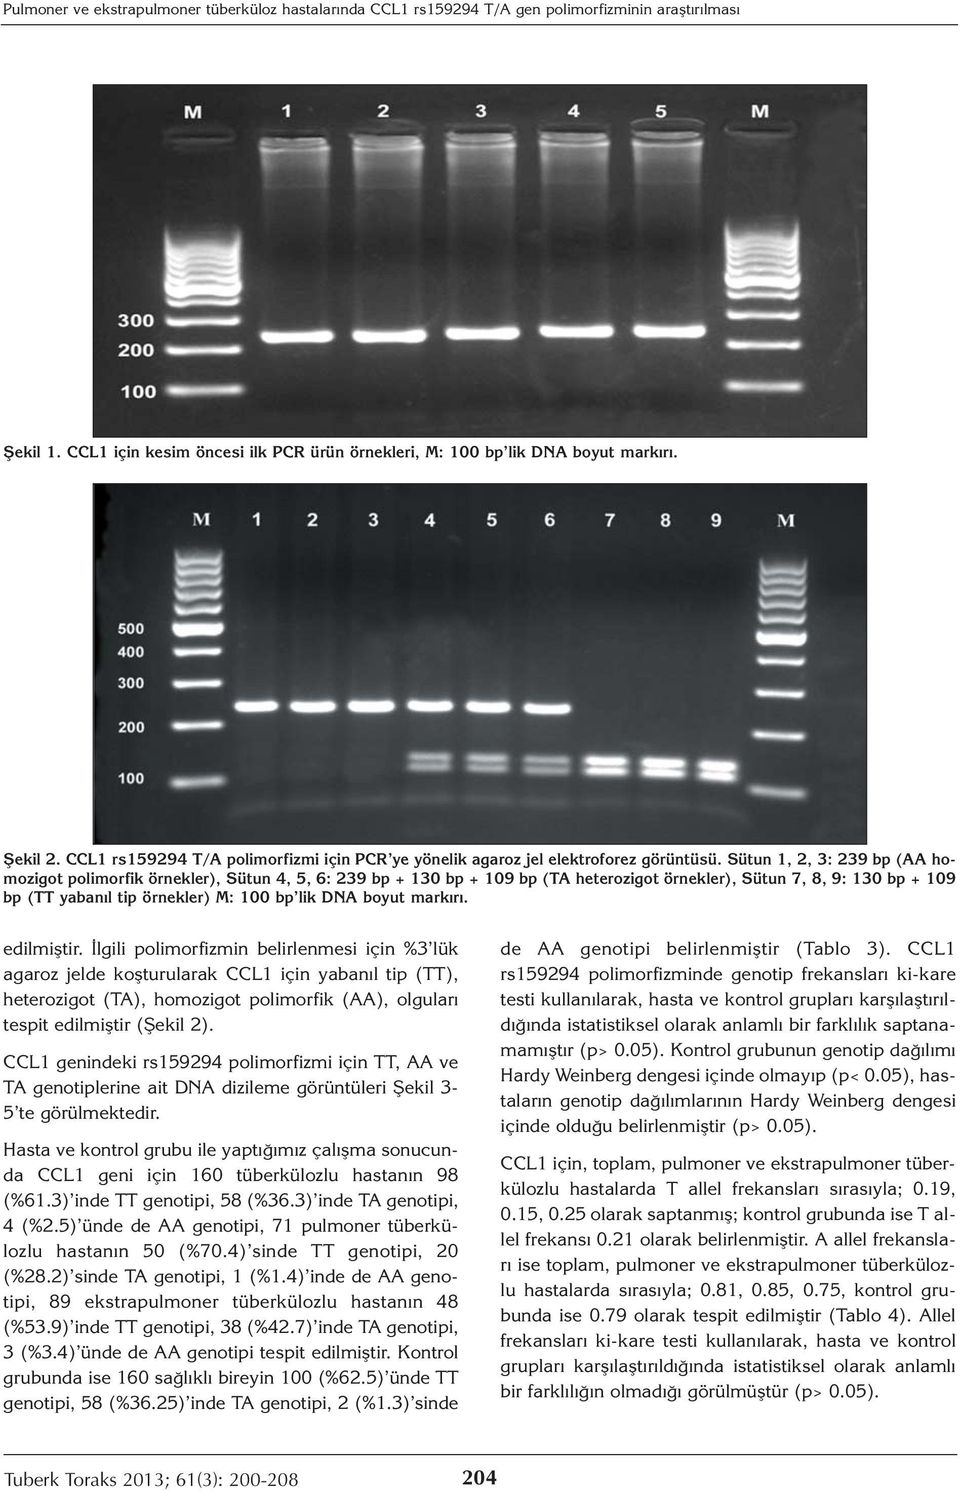 Sütun 1, 2, 3: 239 bp (AA homozigot polimorfik örnekler), Sütun 4, 5, 6: 239 bp + 130 bp + 109 bp (TA heterozigot örnekler), Sütun 7, 8, 9: 130 bp + 109 bp (TT yabanıl tip örnekler) M: 100 bp lik DNA